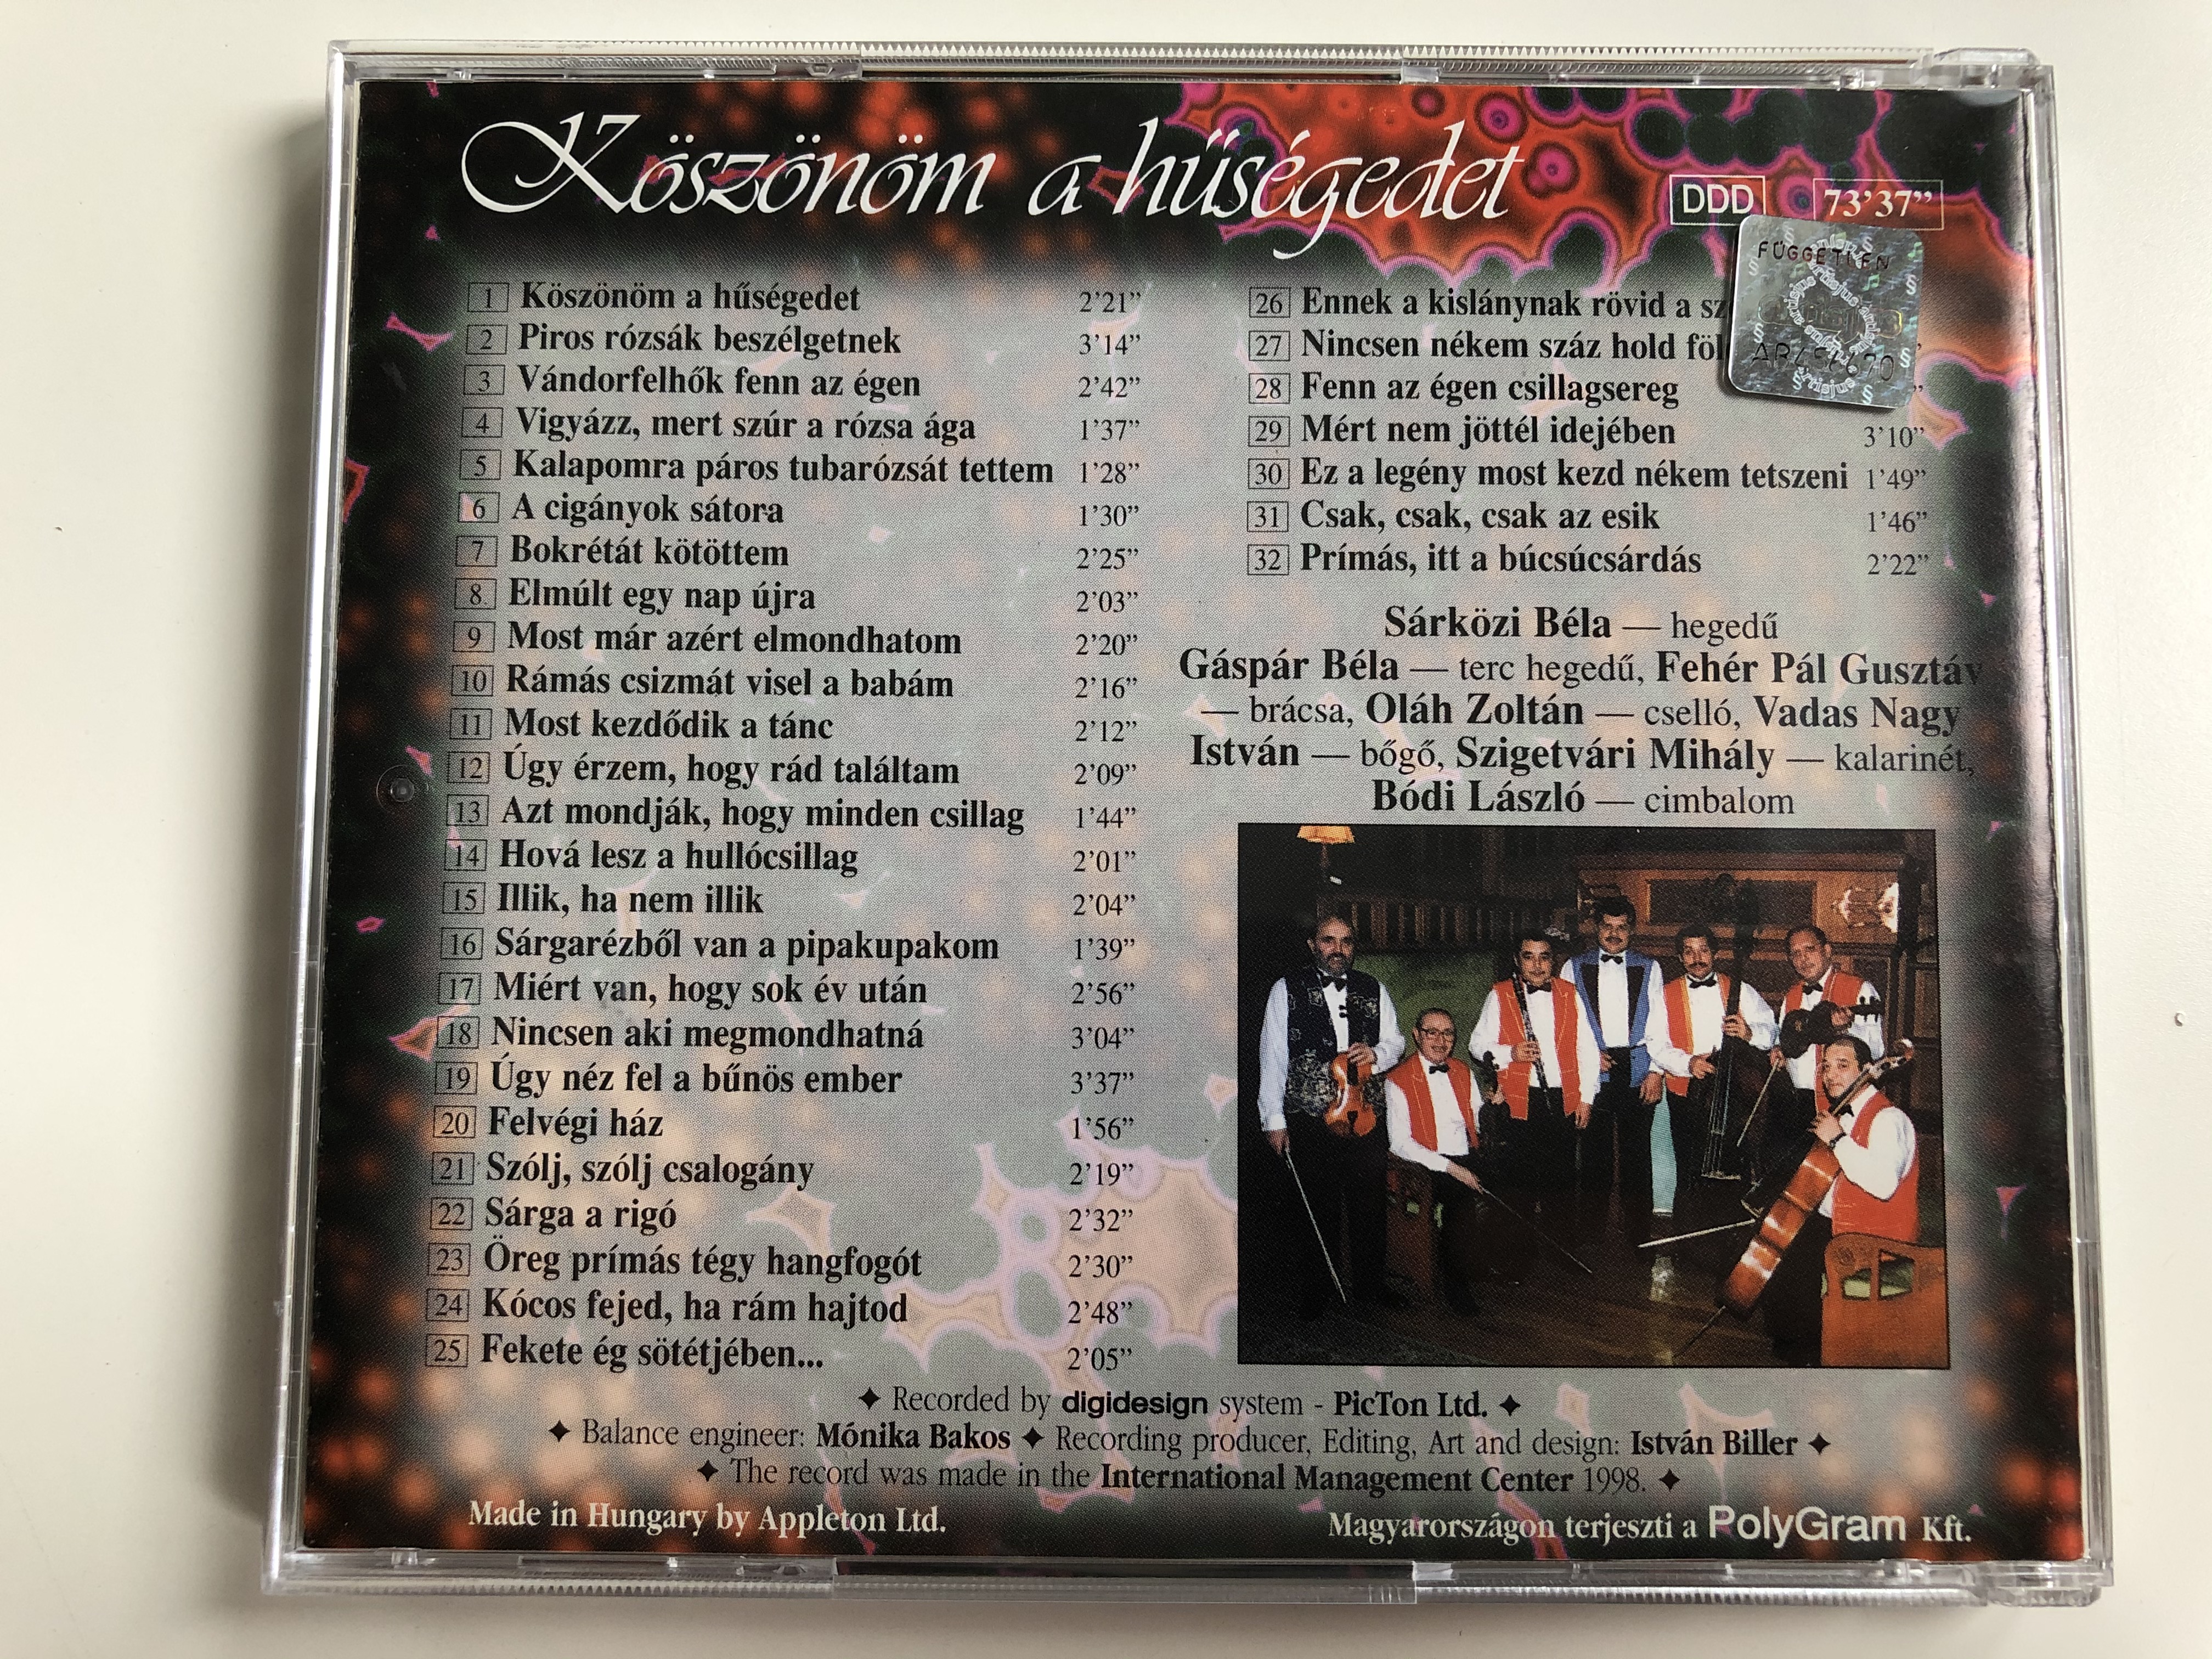 k-sz-n-m-a-h-s-gedet-csala-judit-tarnai-kiss-l-szl-appleton-ltd.-audio-cd-1998-stereo-bcc-18-7-.jpg